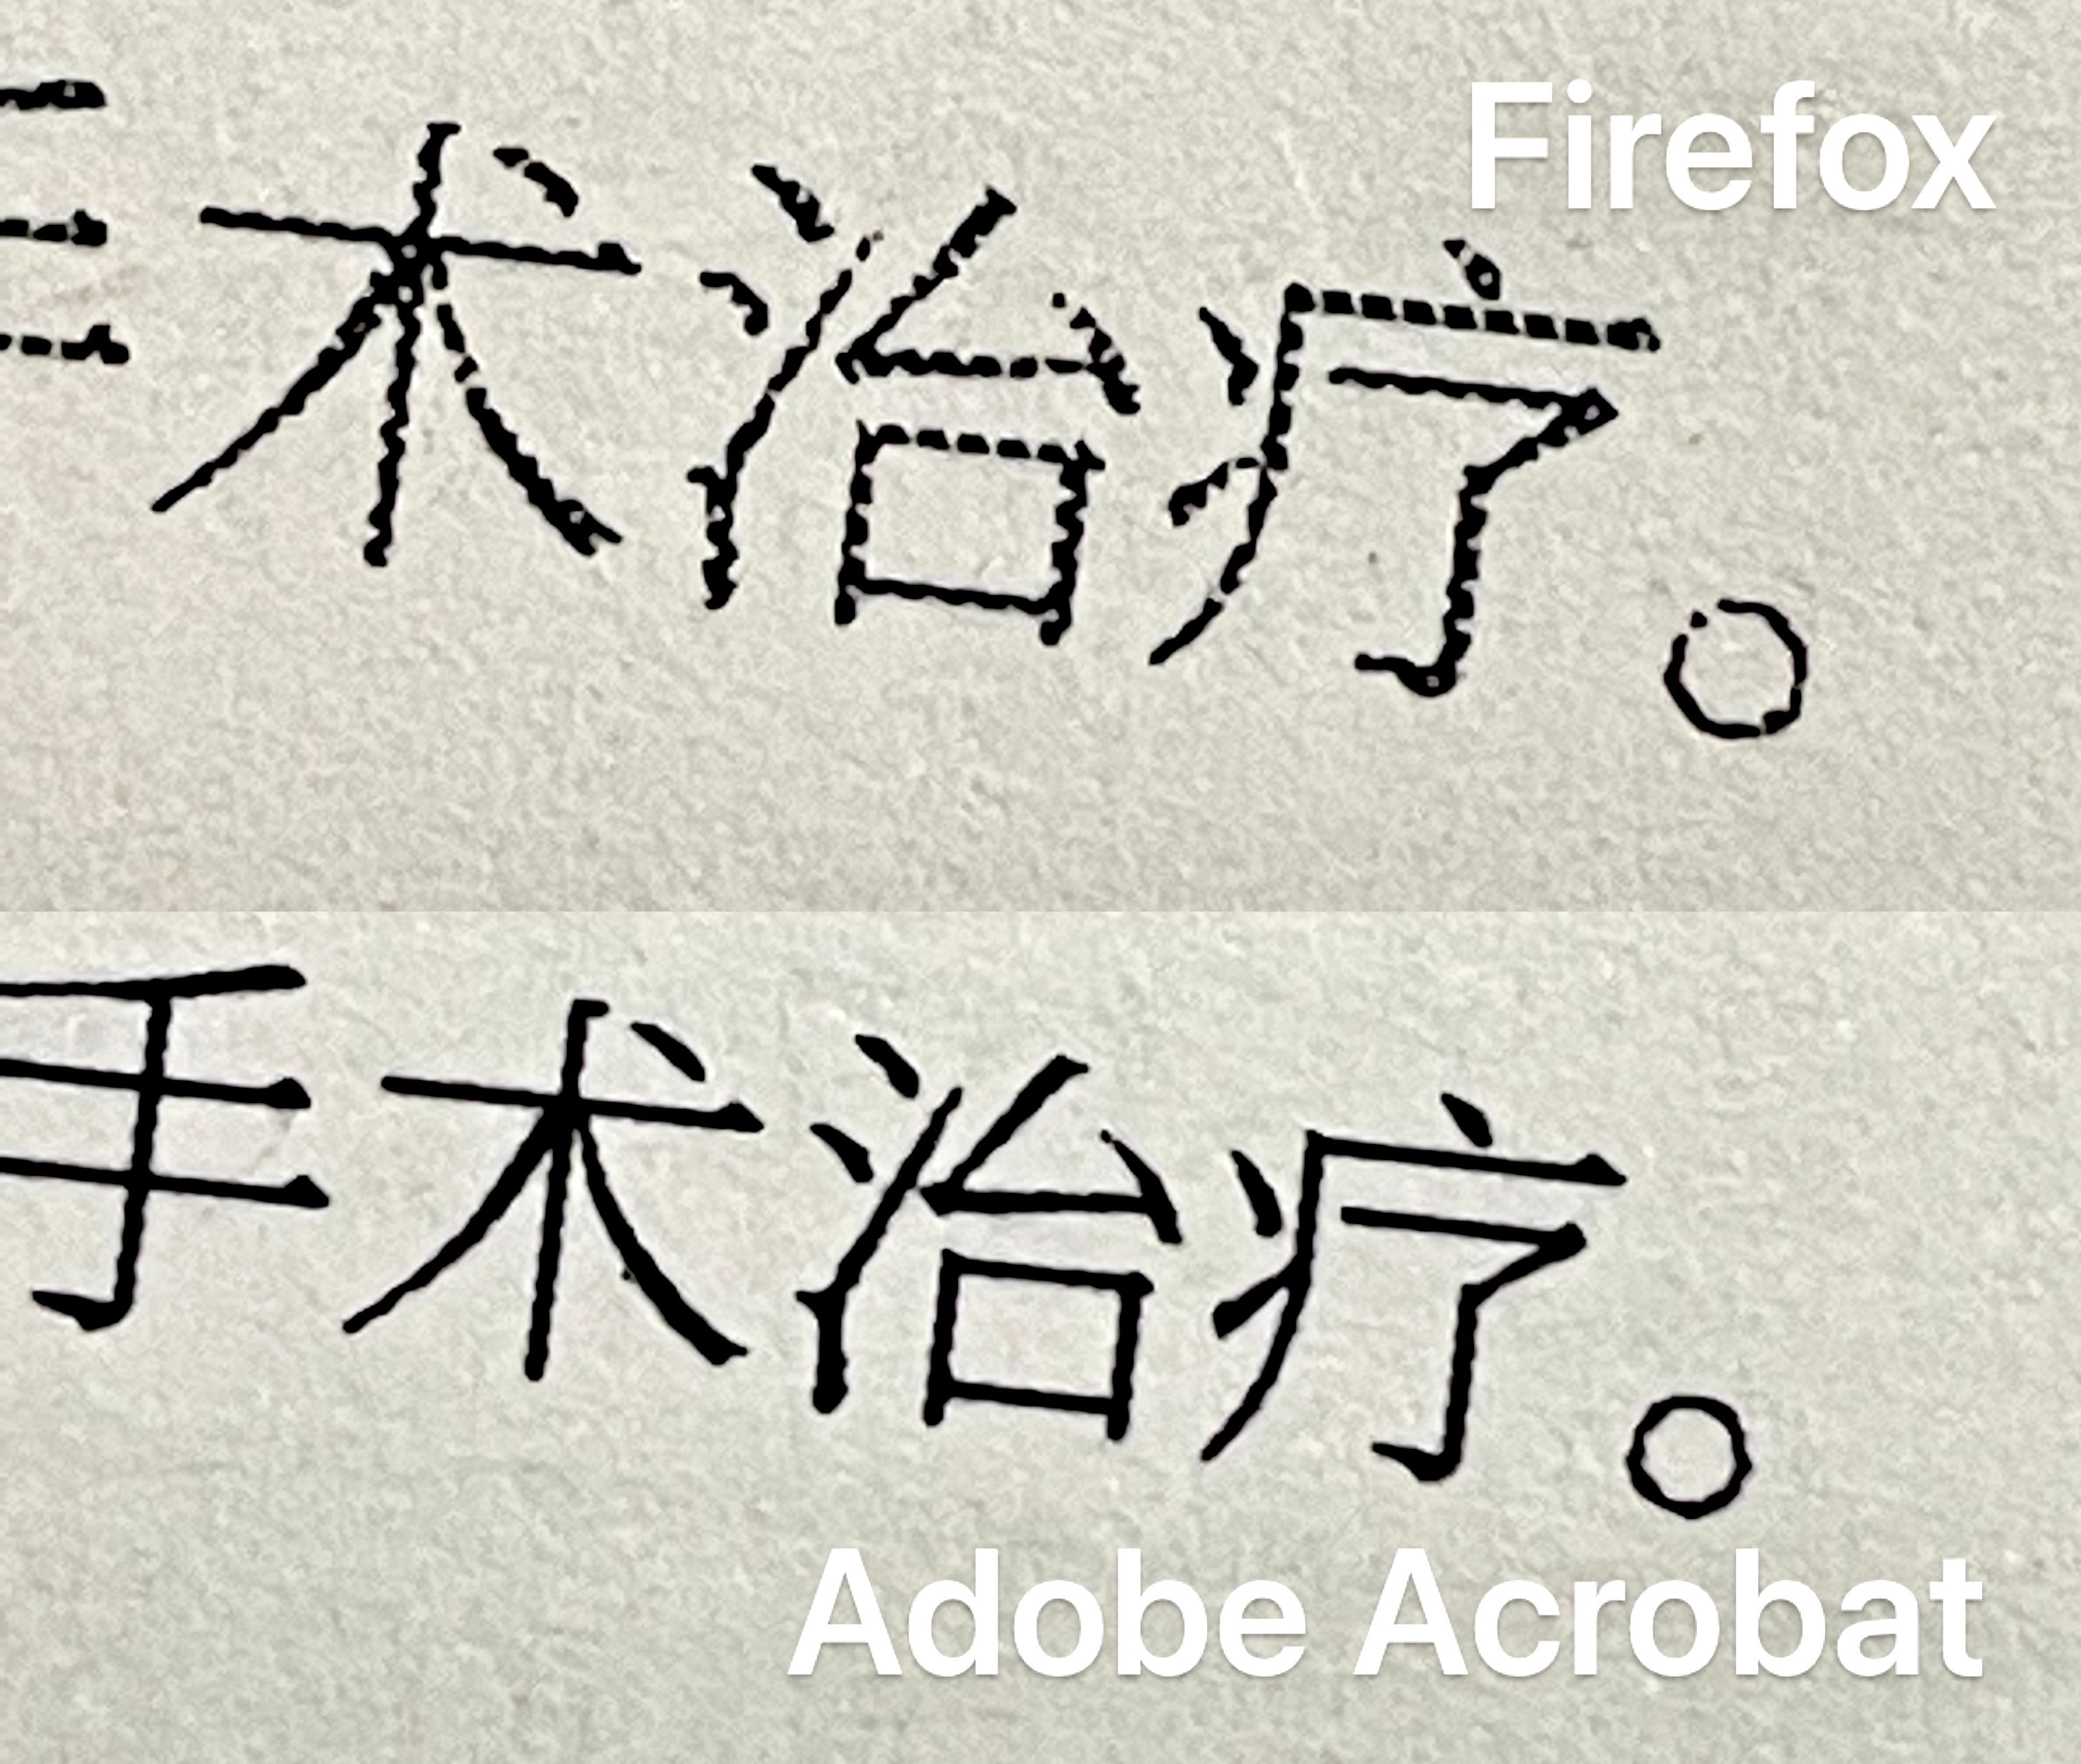 使用 Firefox 执行打印的 PDF 字体没有 Acrobat 清晰